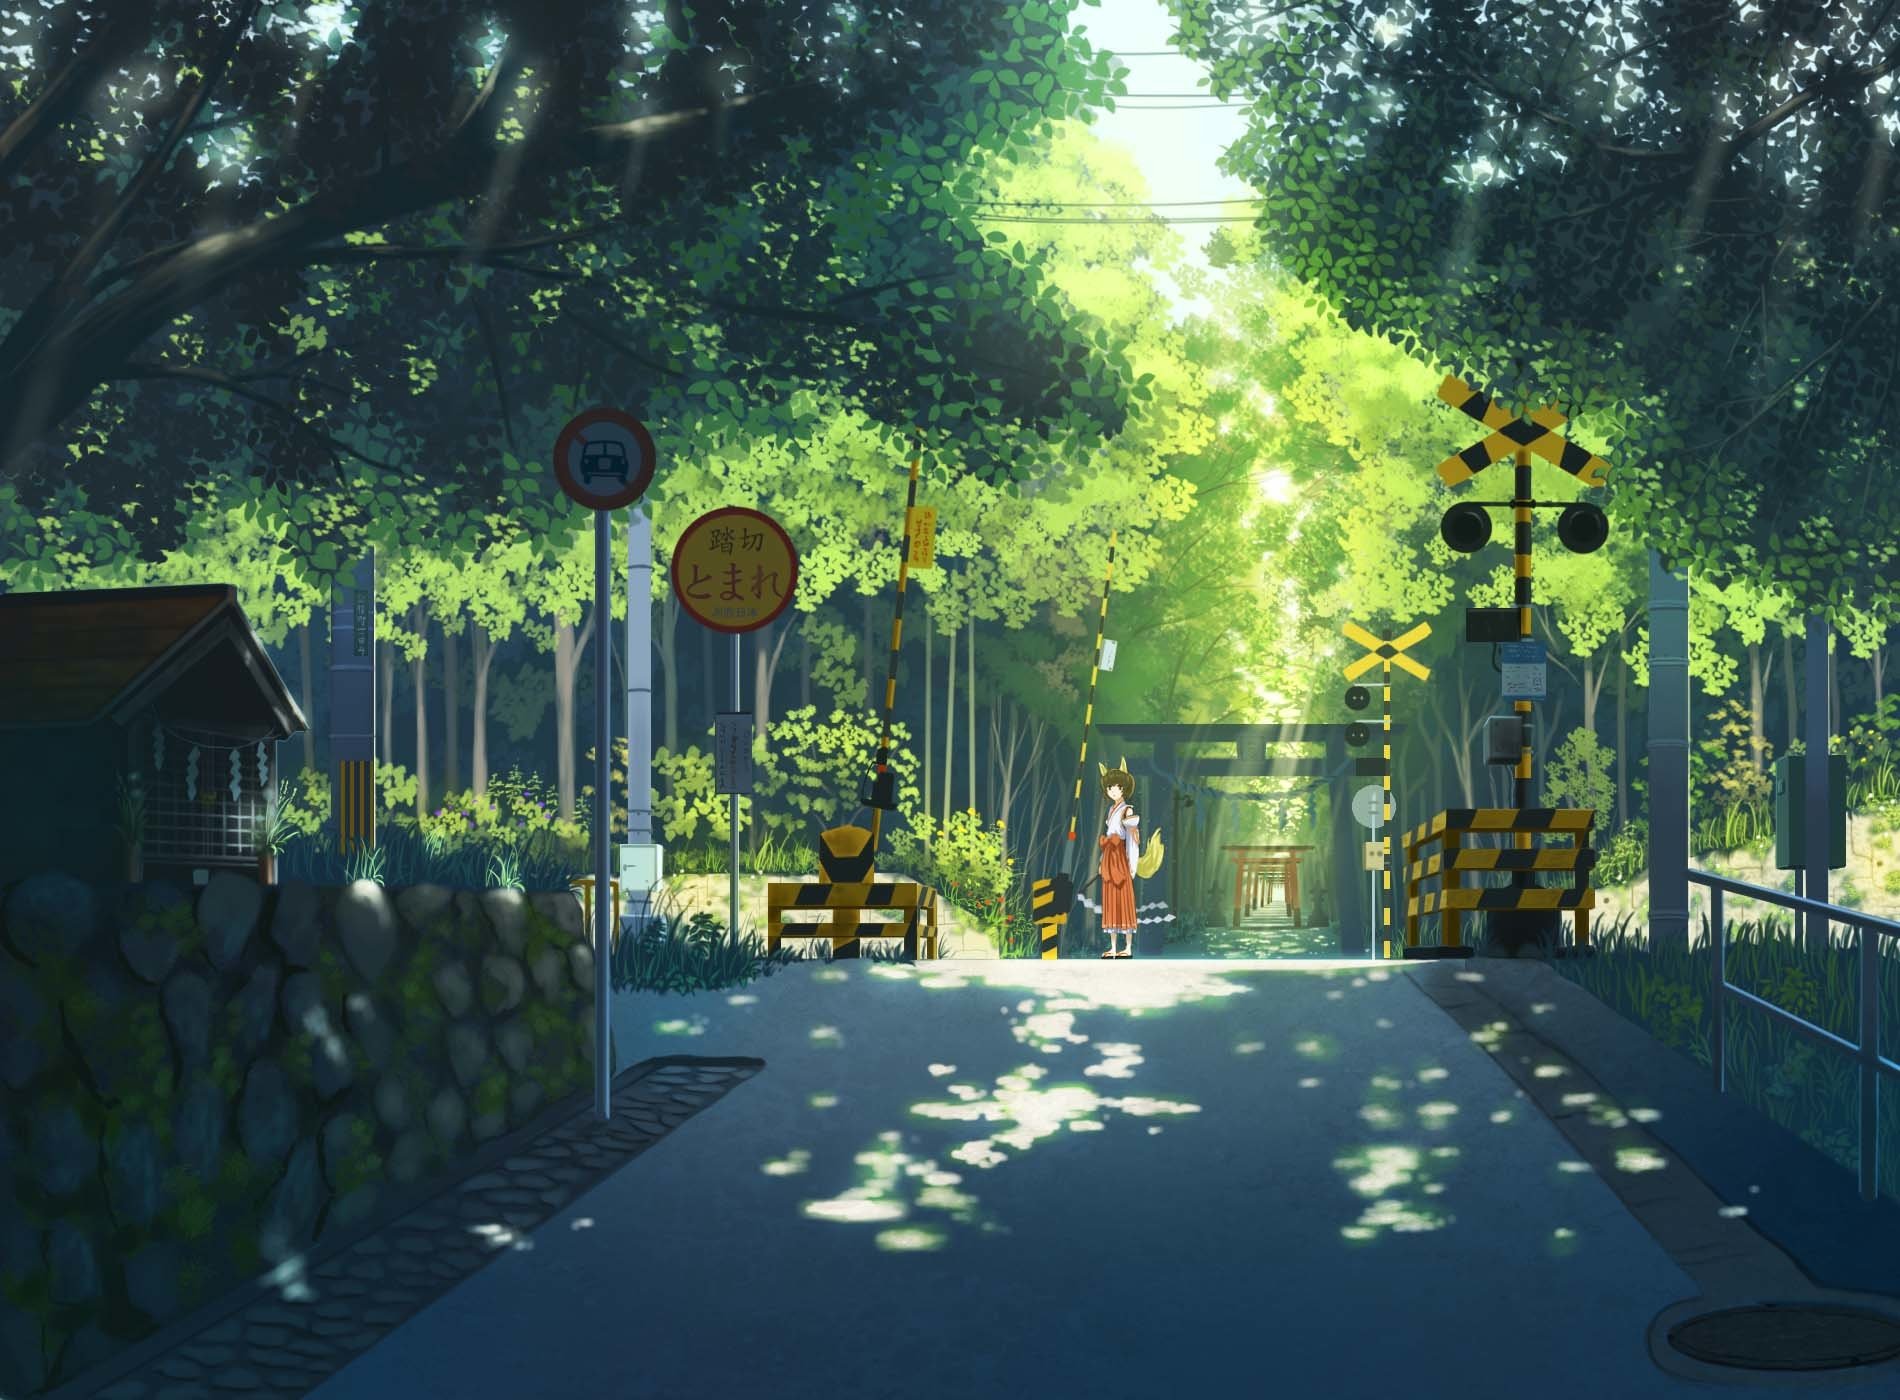 Hình ảnh anime phong cảnh tuyệt đẹp, sắc nét